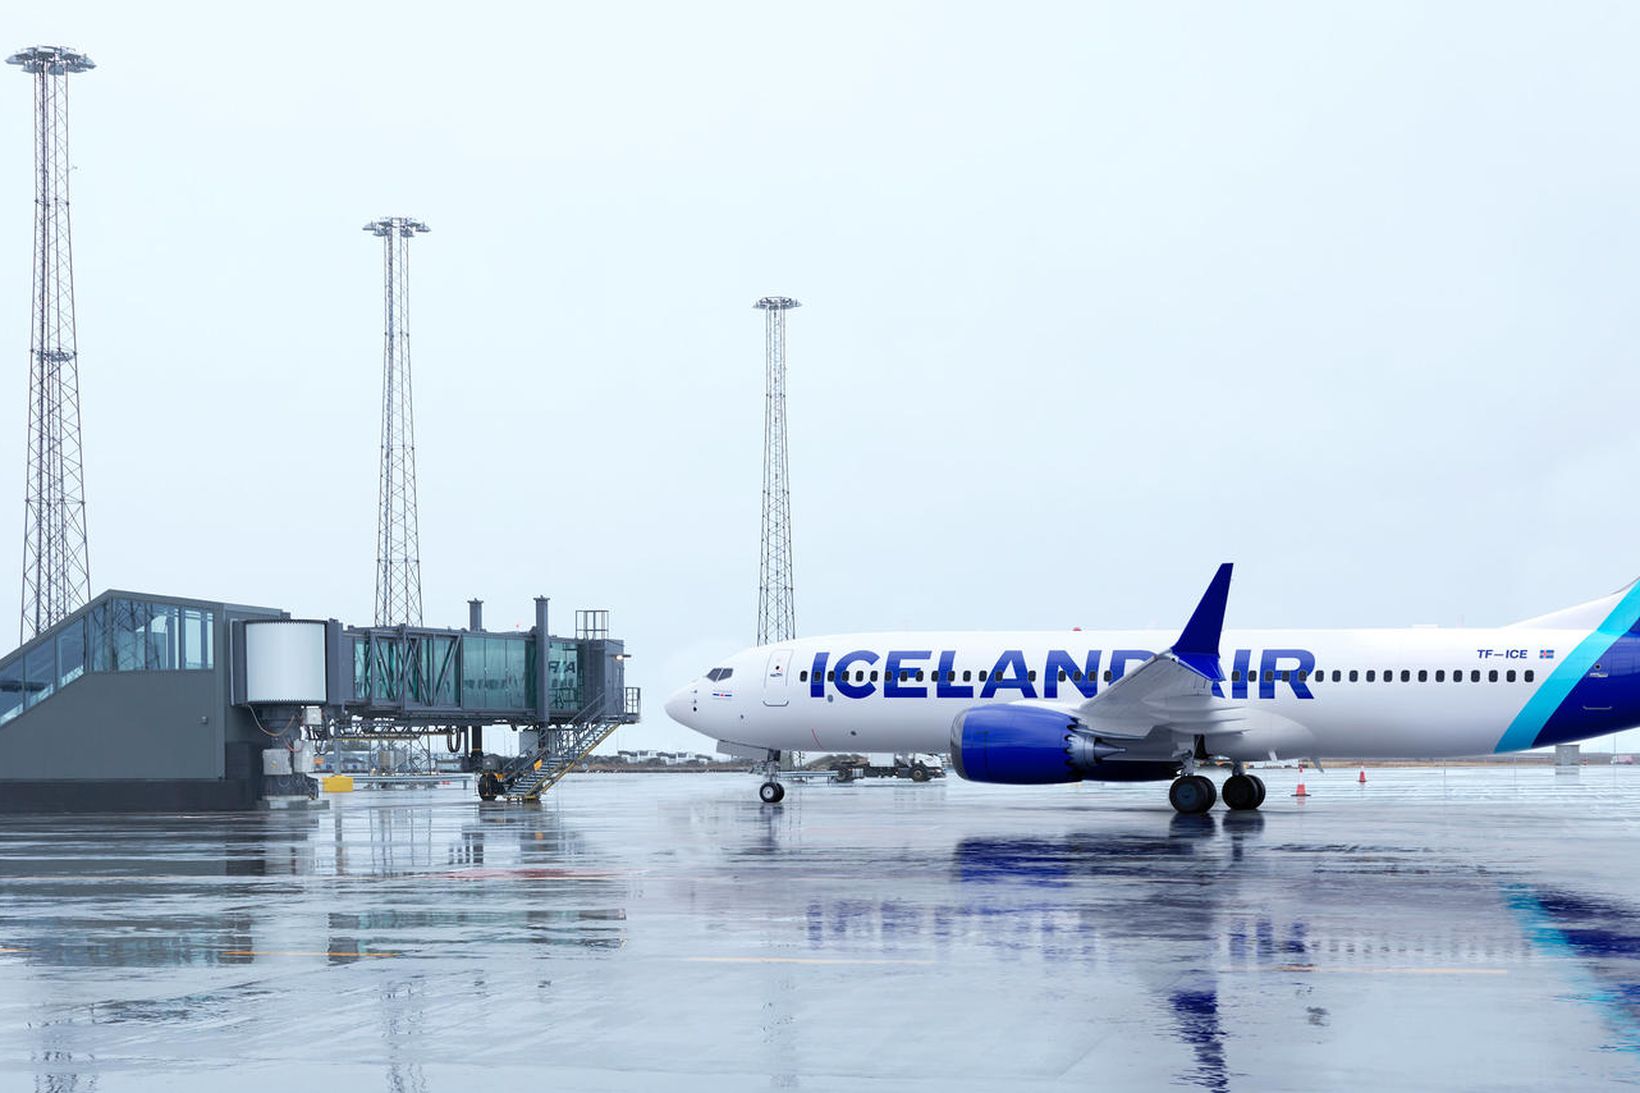 Guðni segir það einnig létta undir, að Icelandair hafi gripið …